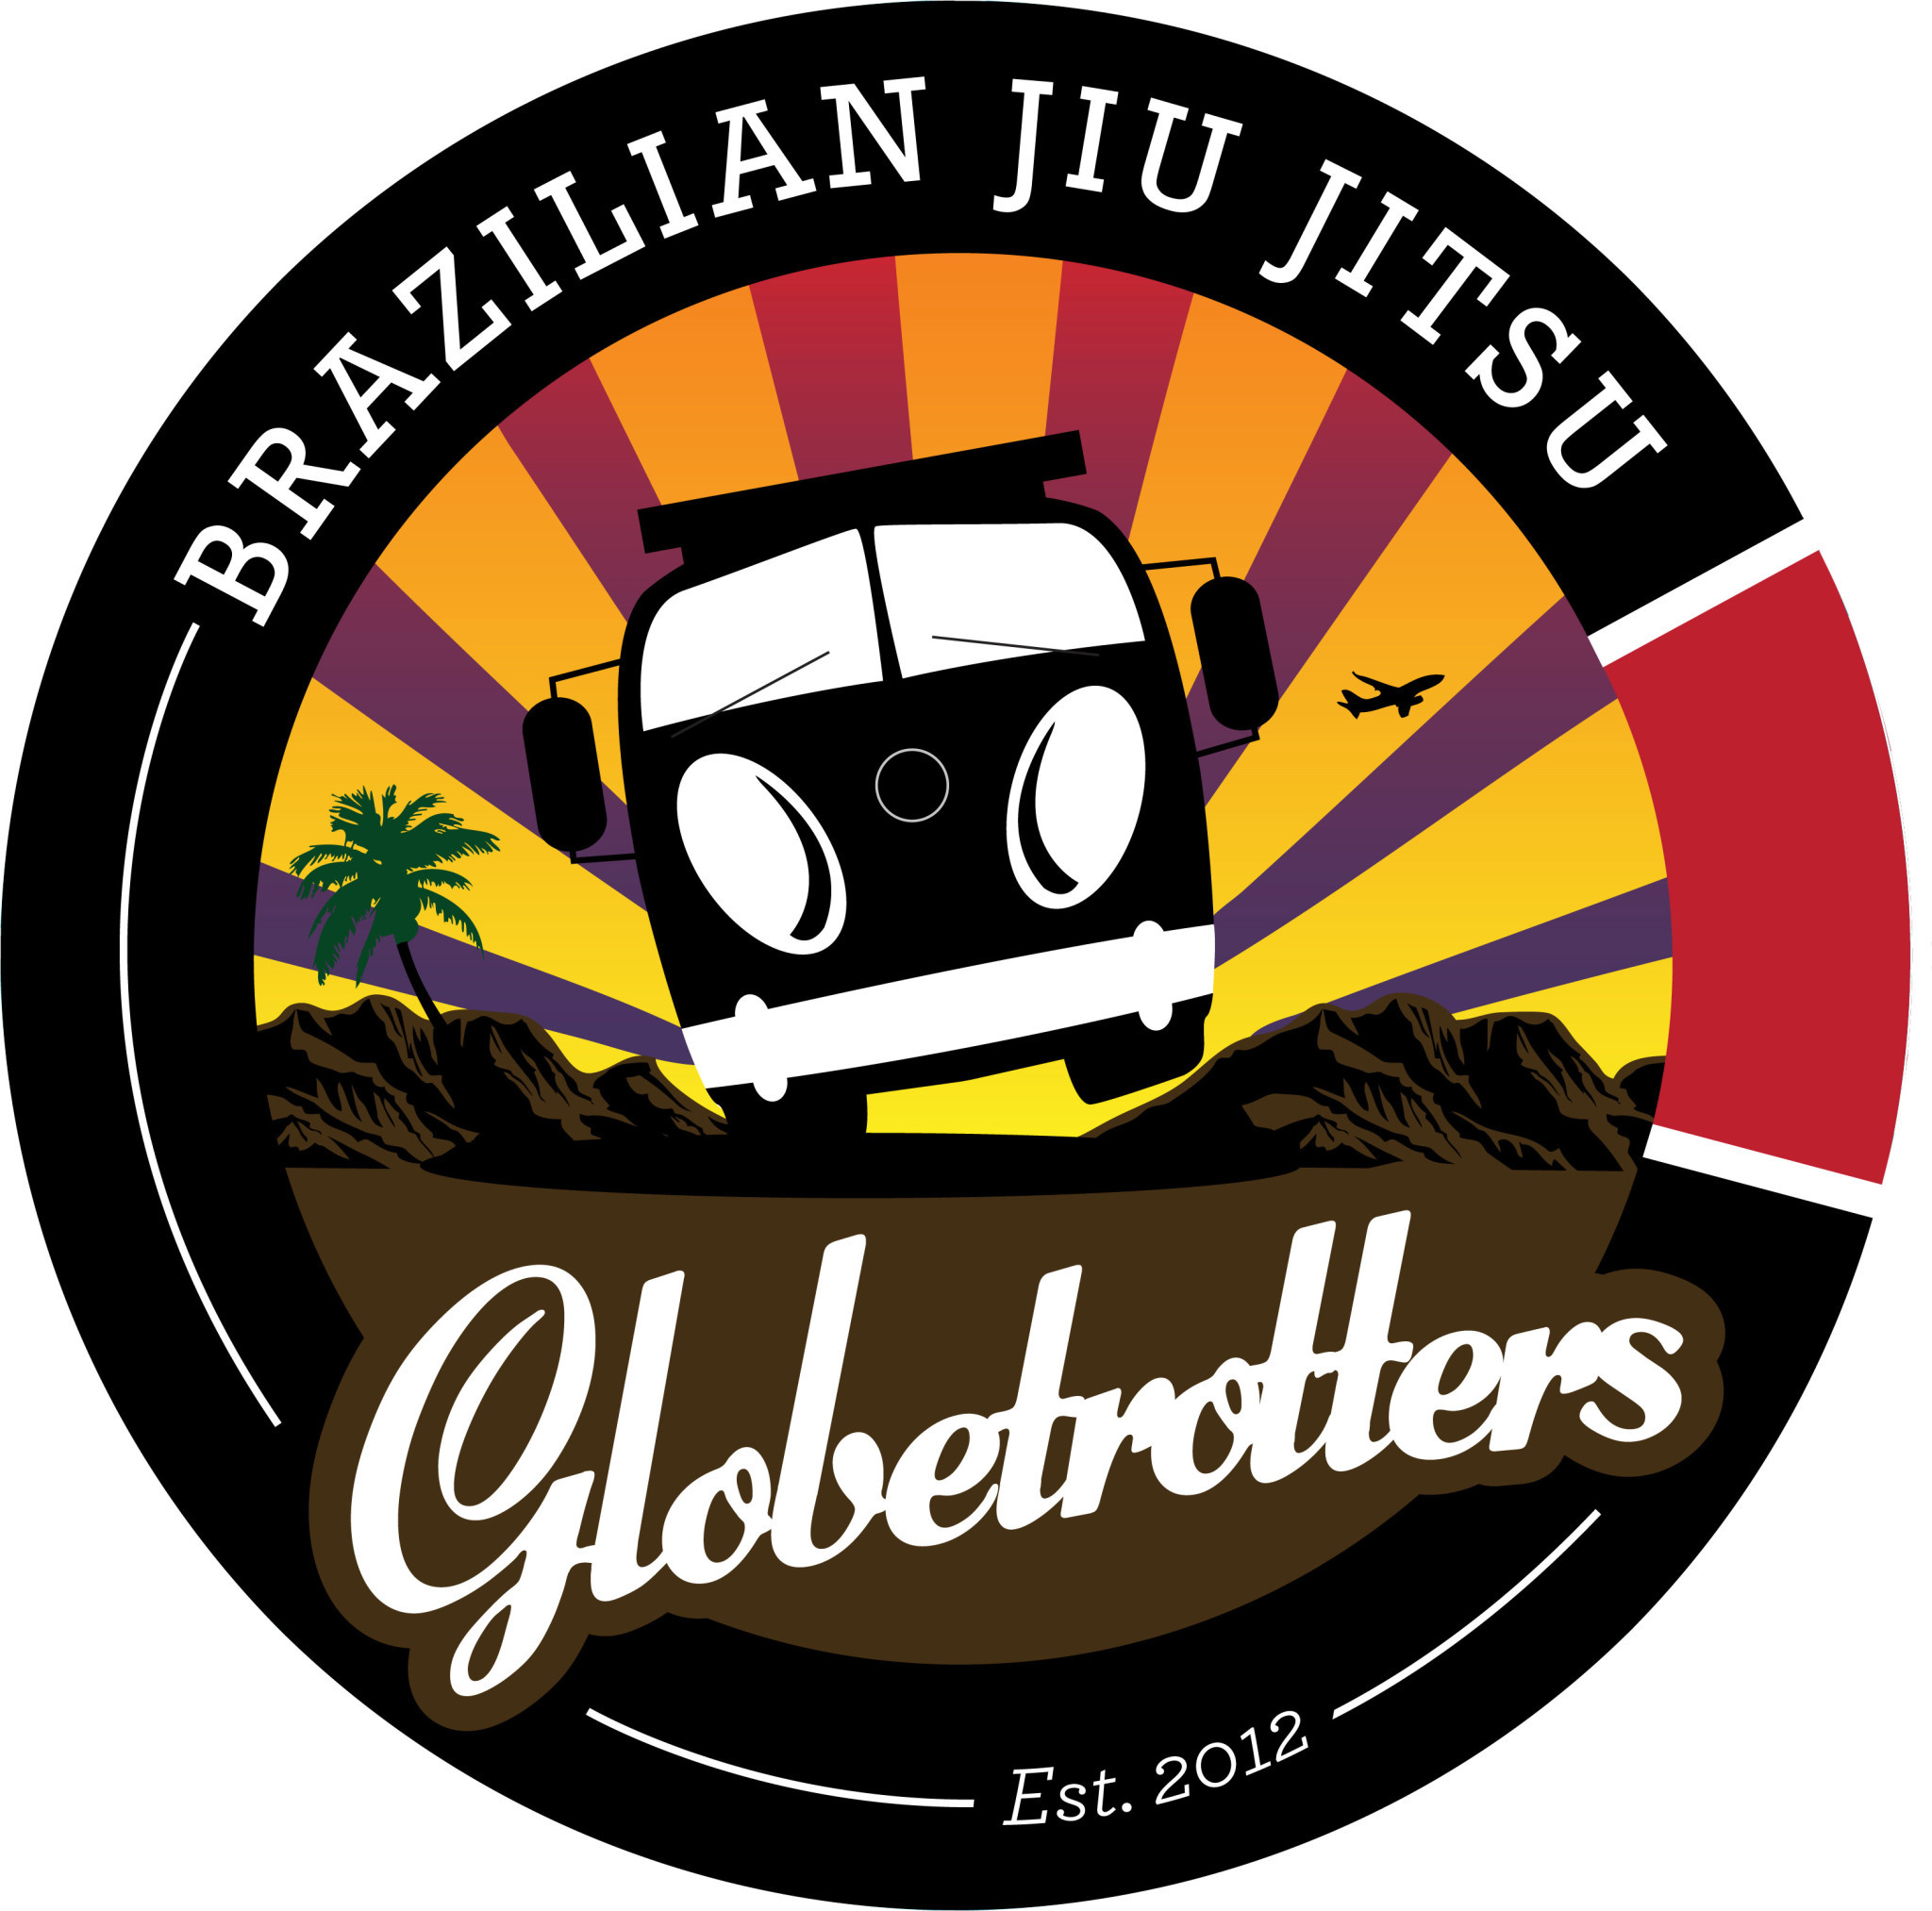 2048x2026 Filename: bjj-globetrotters-logo-ingen-kant.jpg